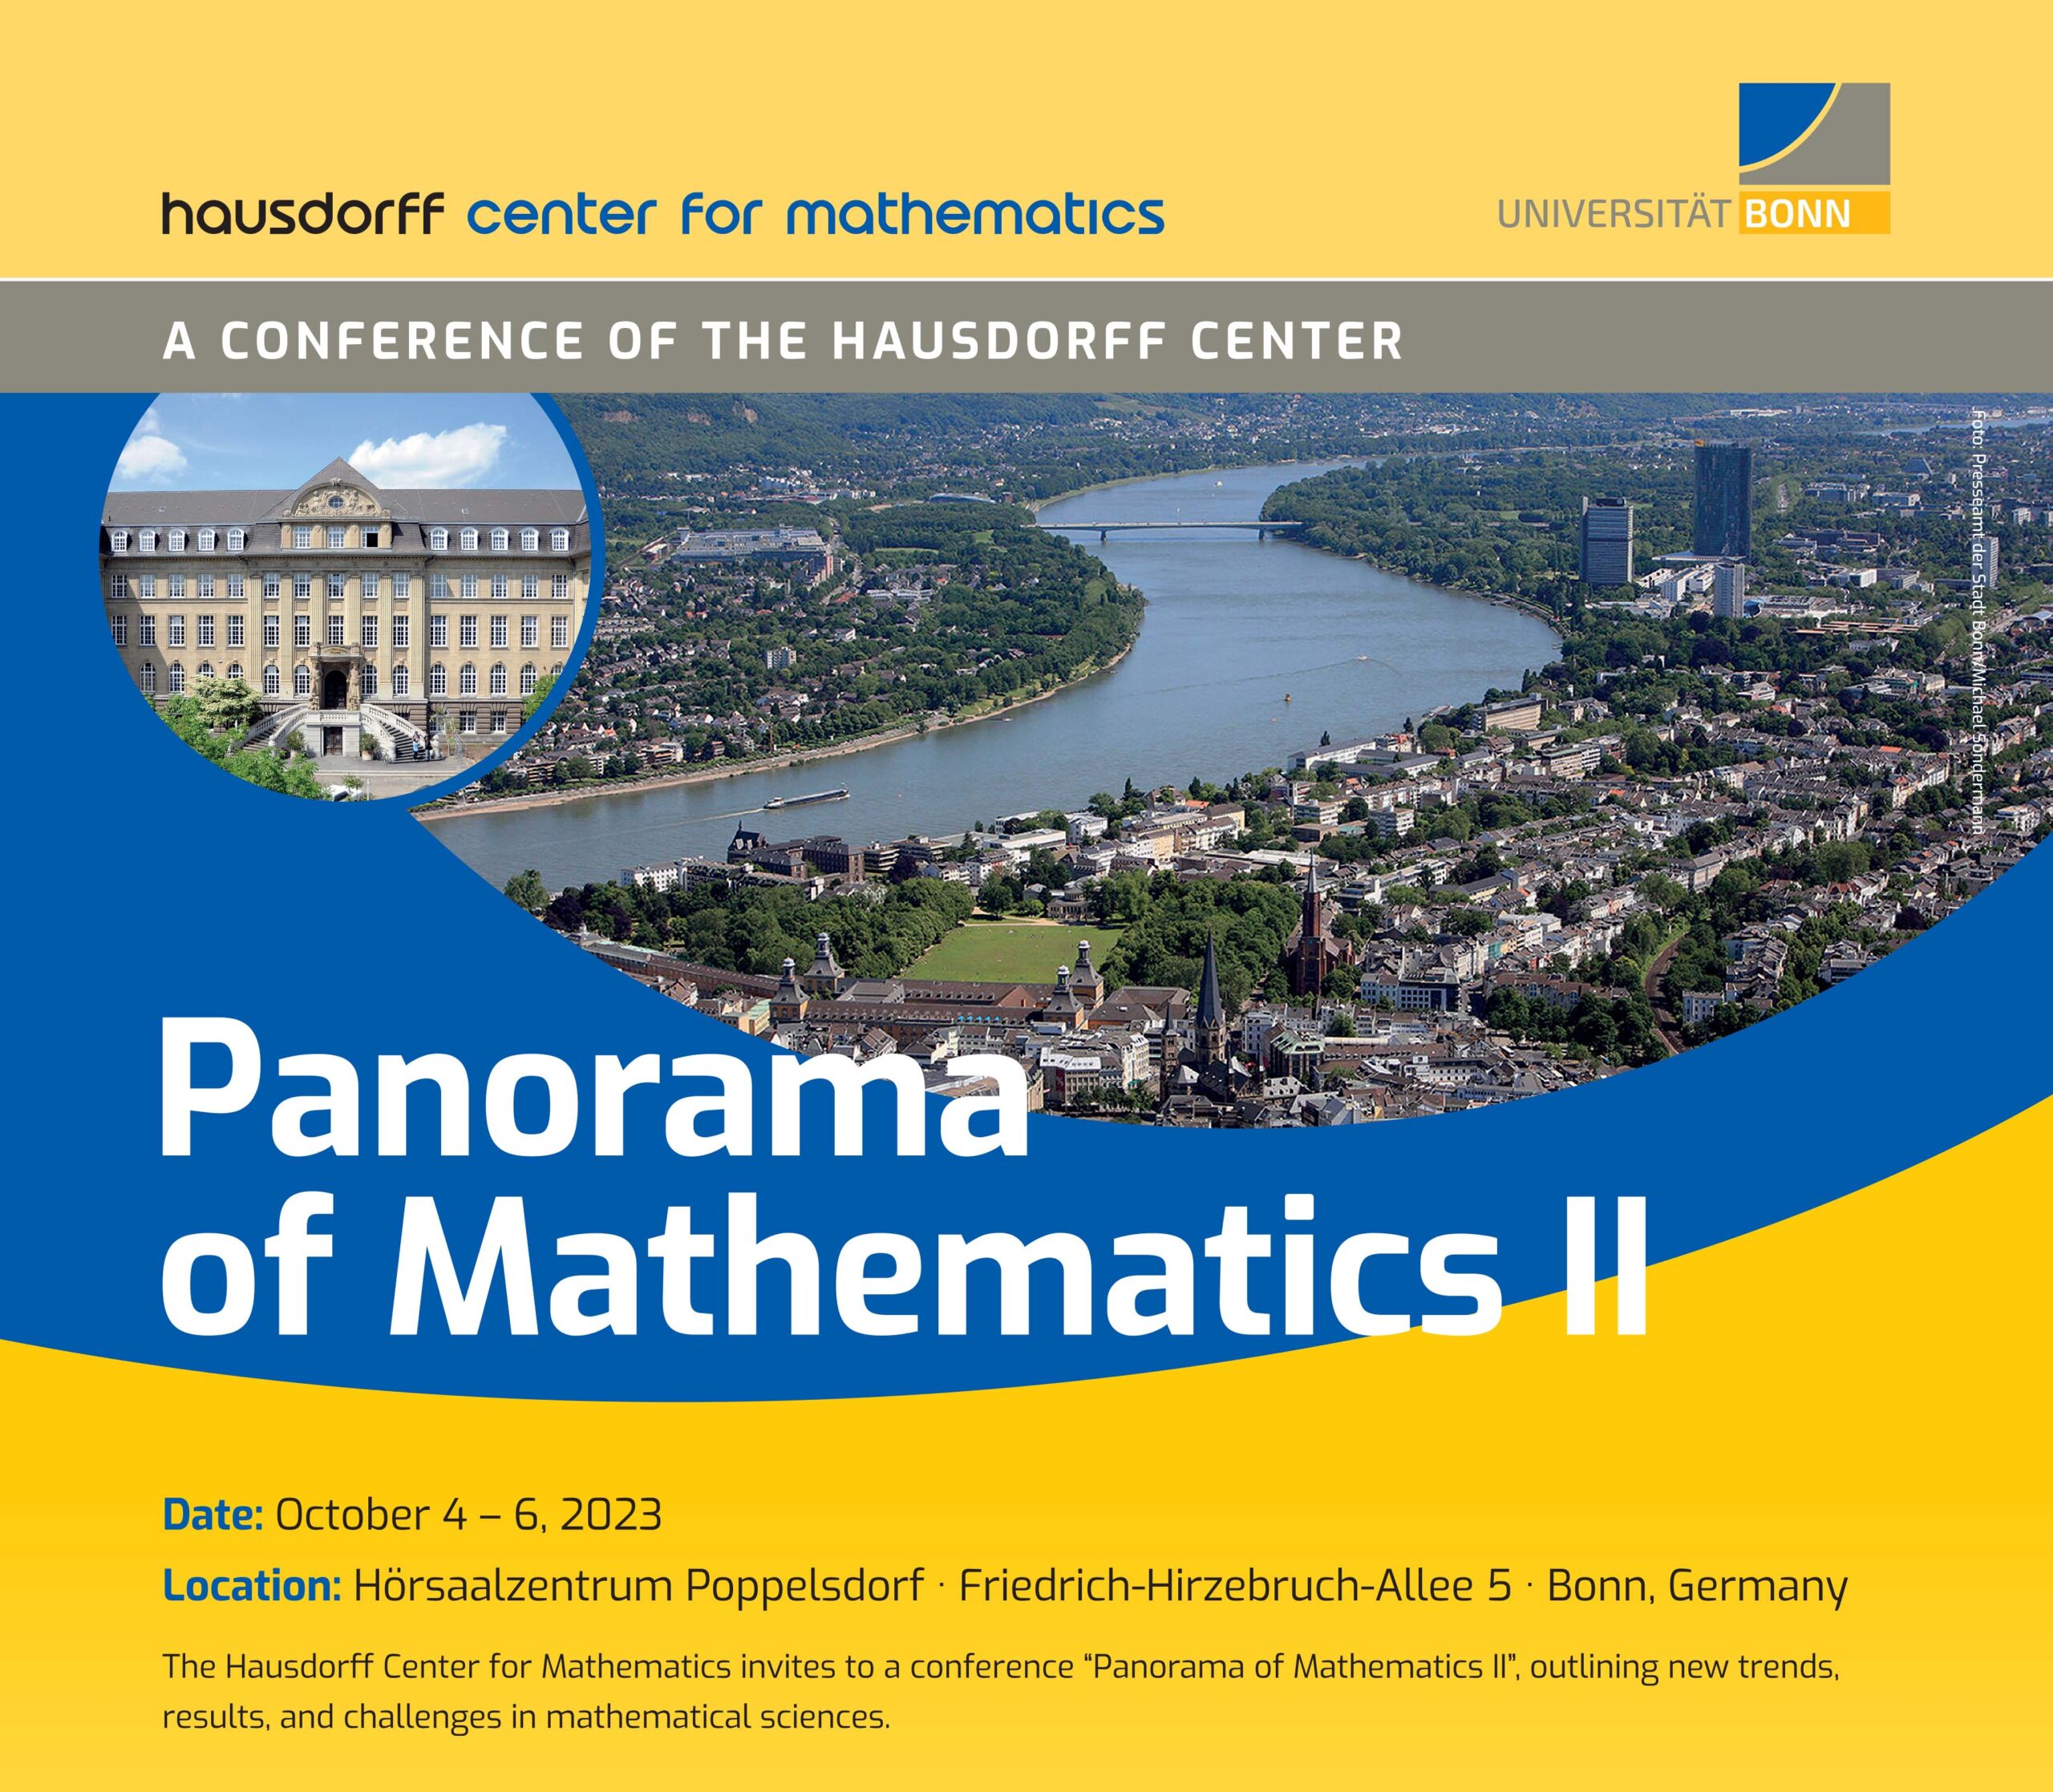 Panorama of Mathematics II